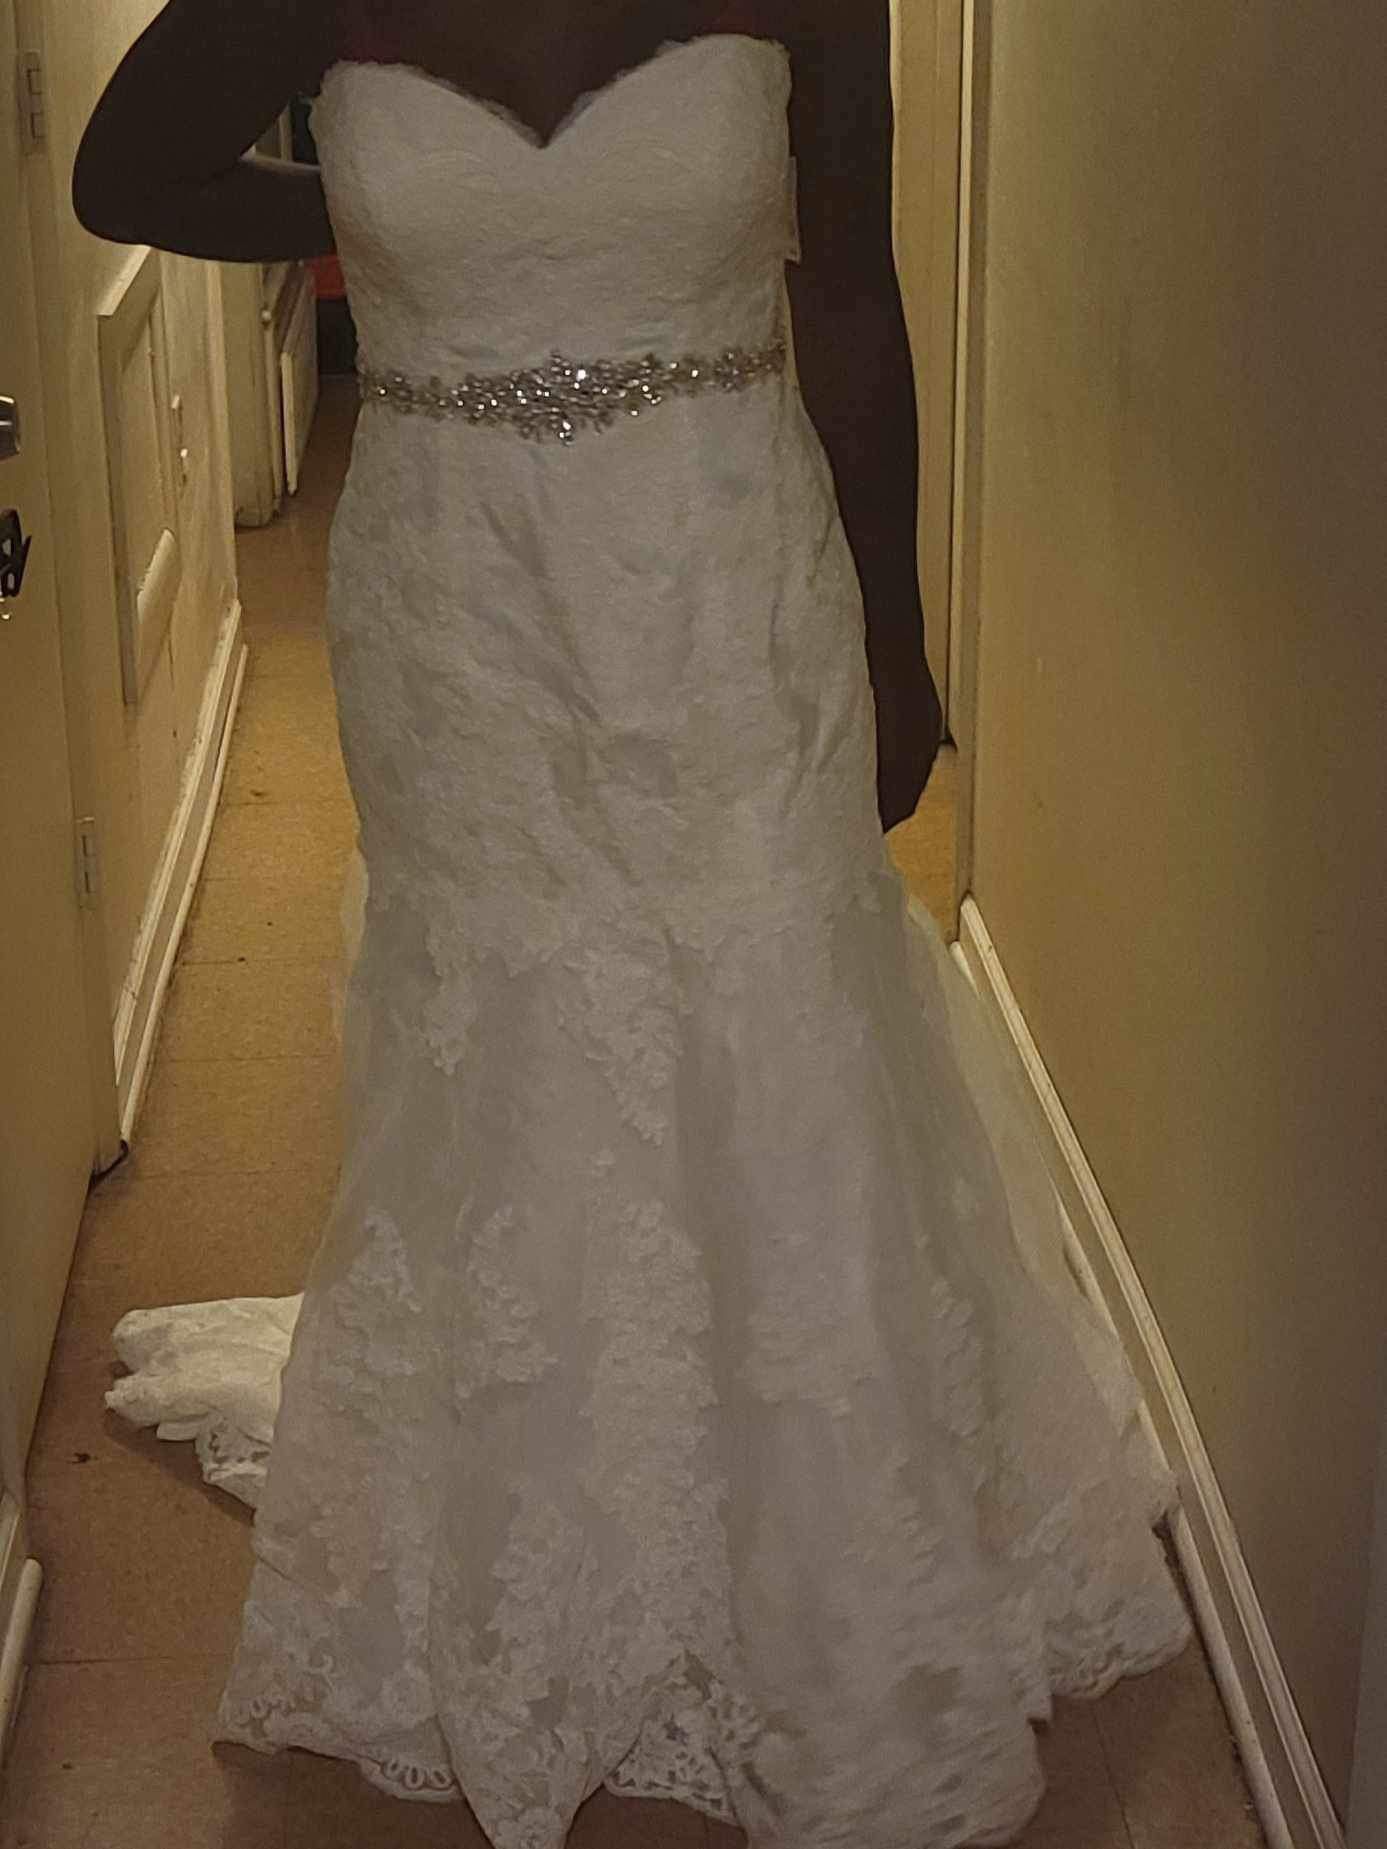 New Wedding Dress Size 12